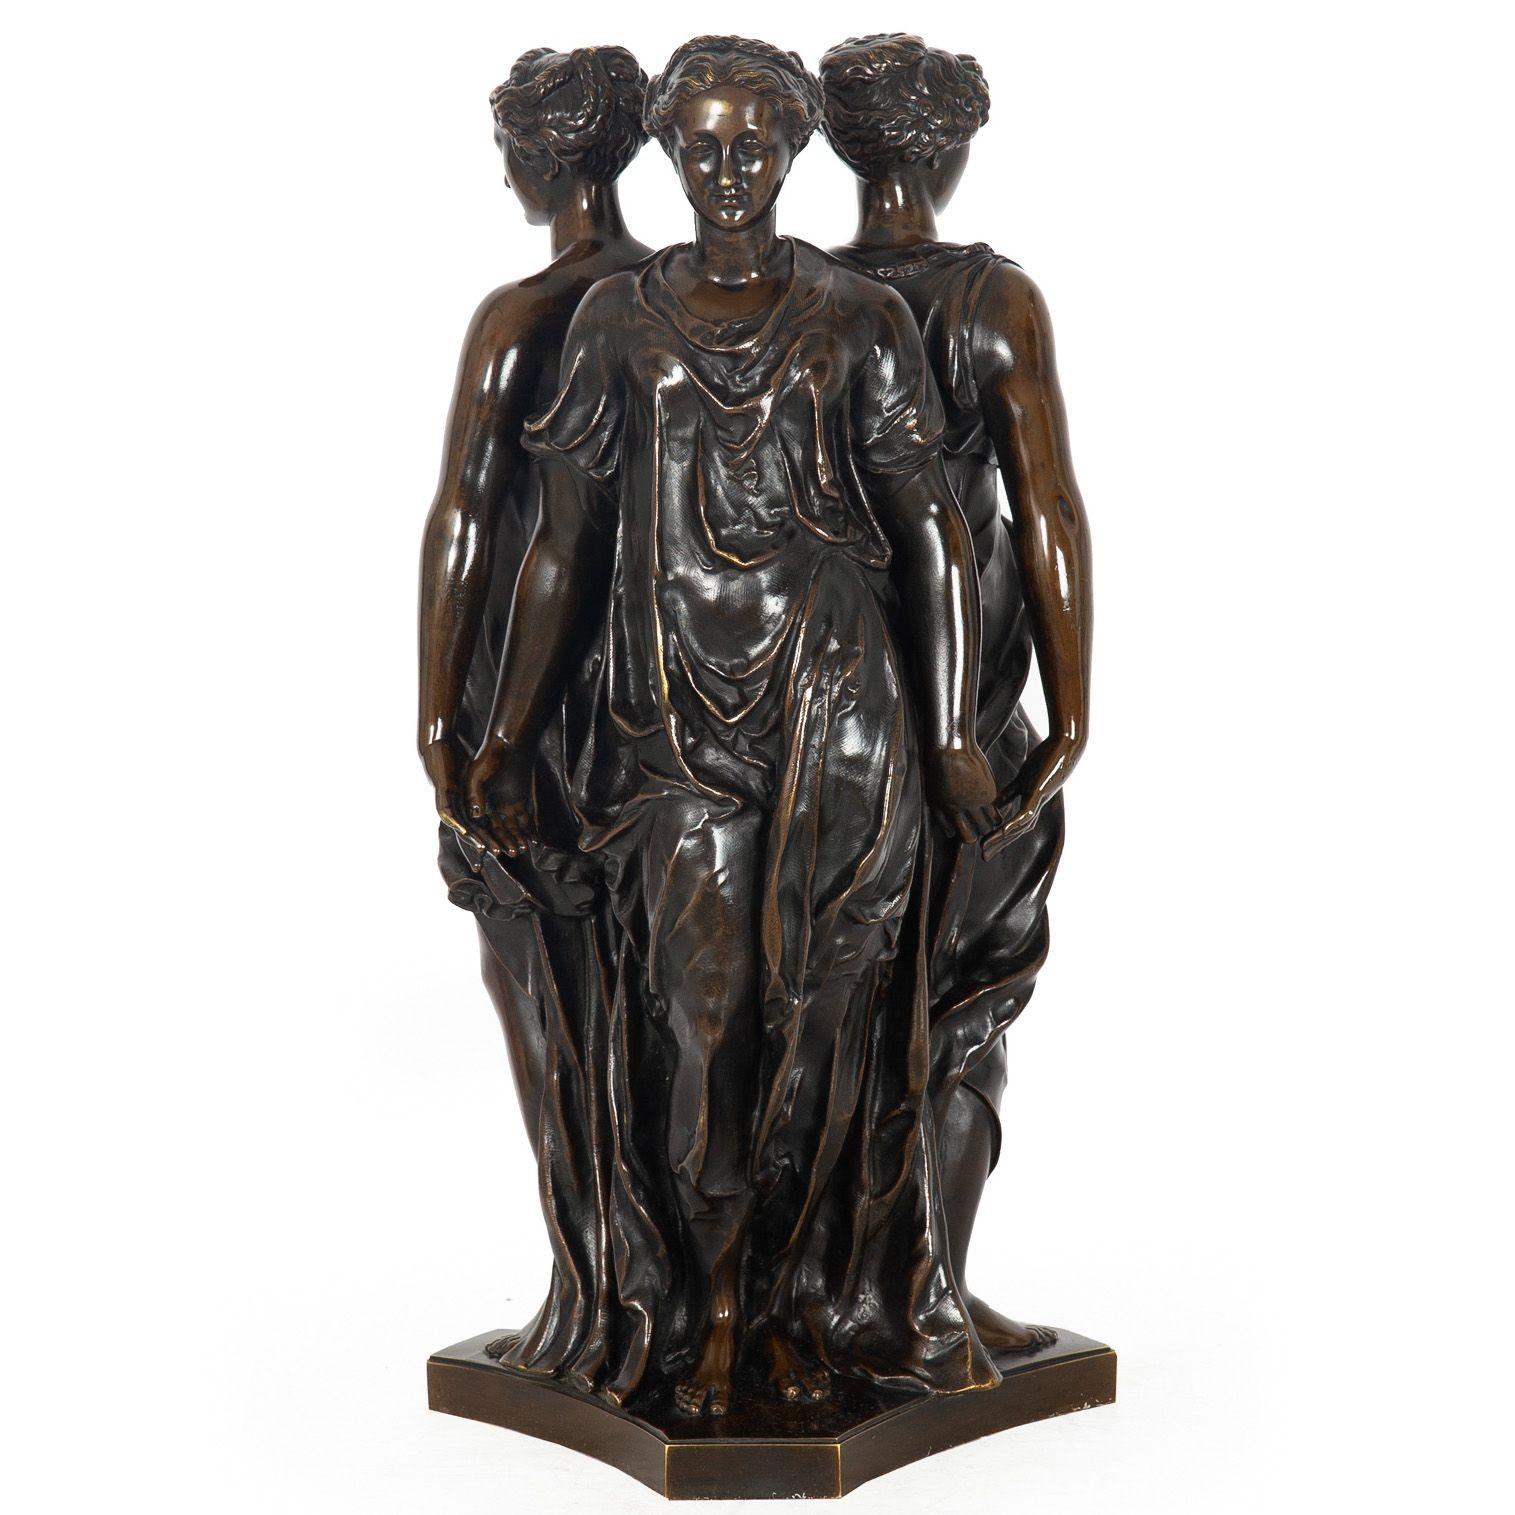 Romantic French Antique Bronze Sculpture “Three Graces” after Germain Pilon For Sale